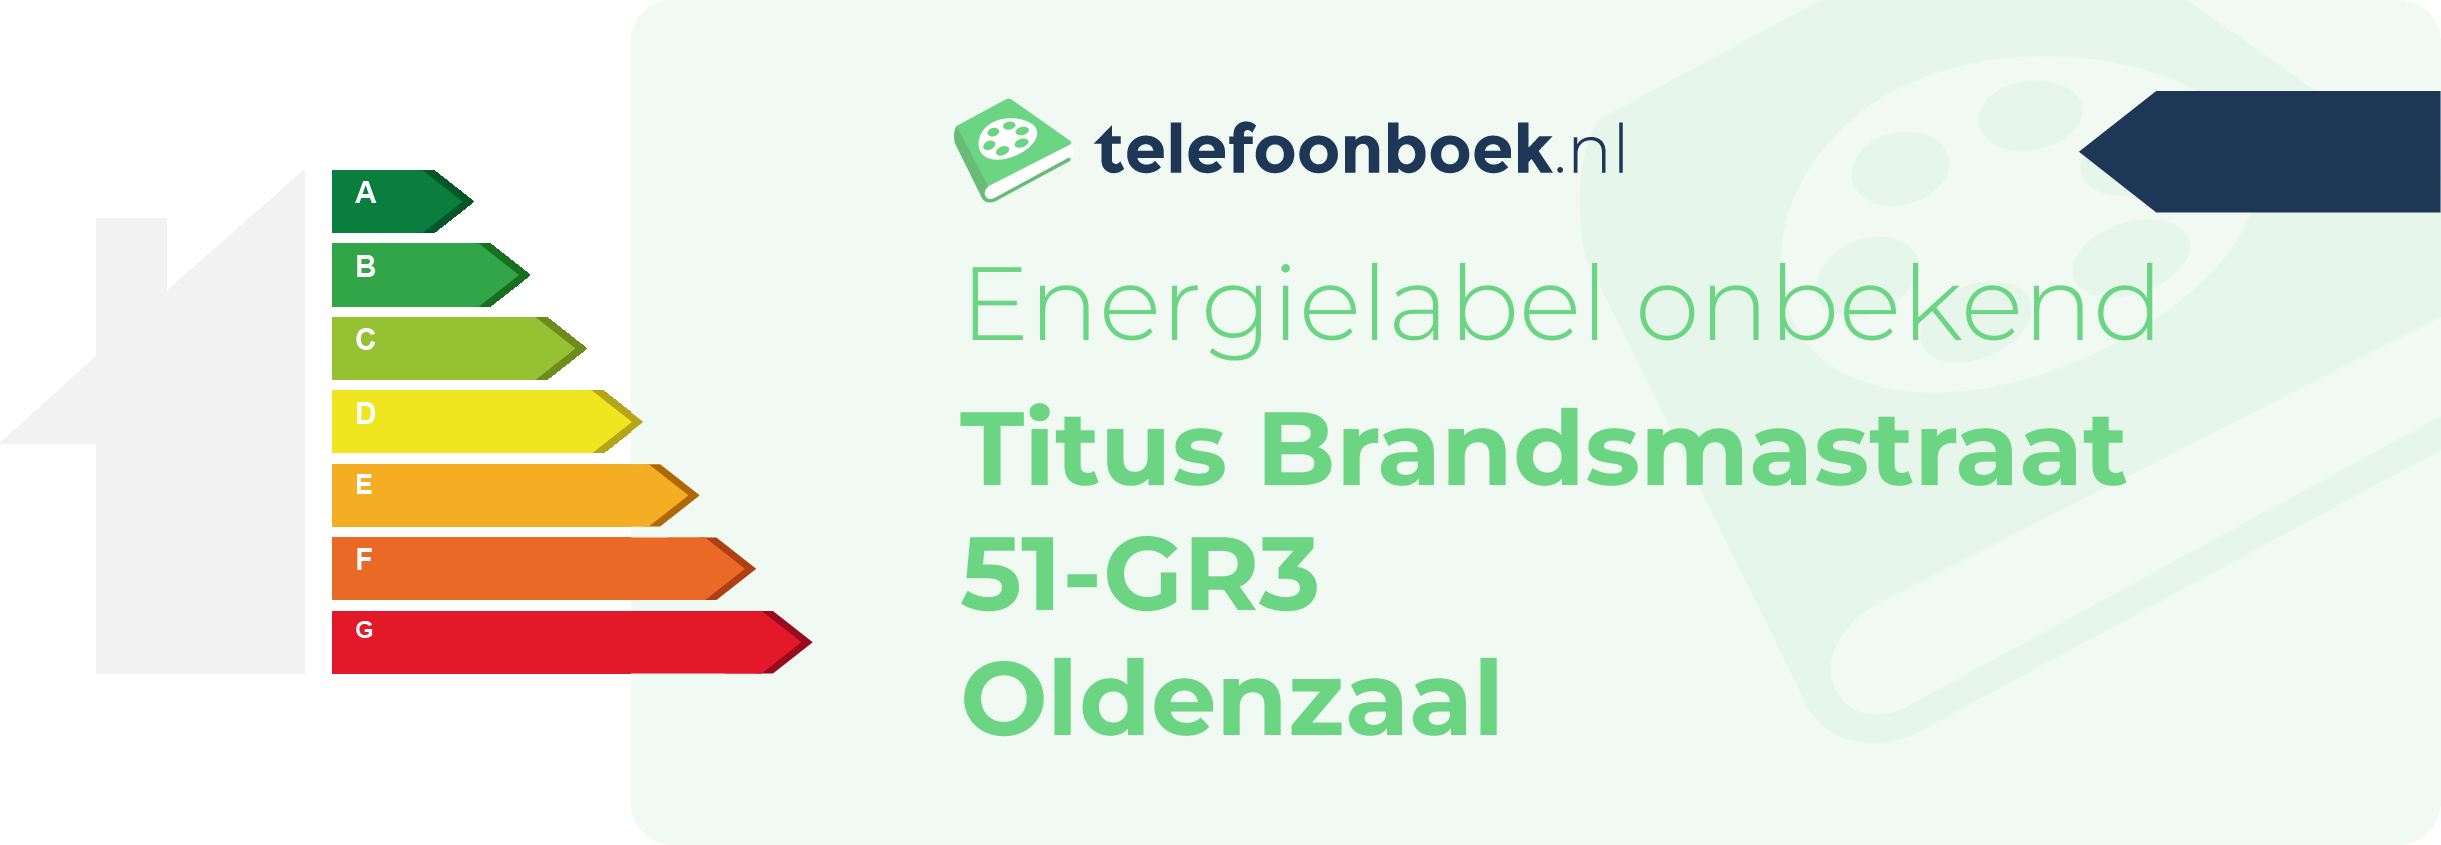 Energielabel Titus Brandsmastraat 51-GR3 Oldenzaal